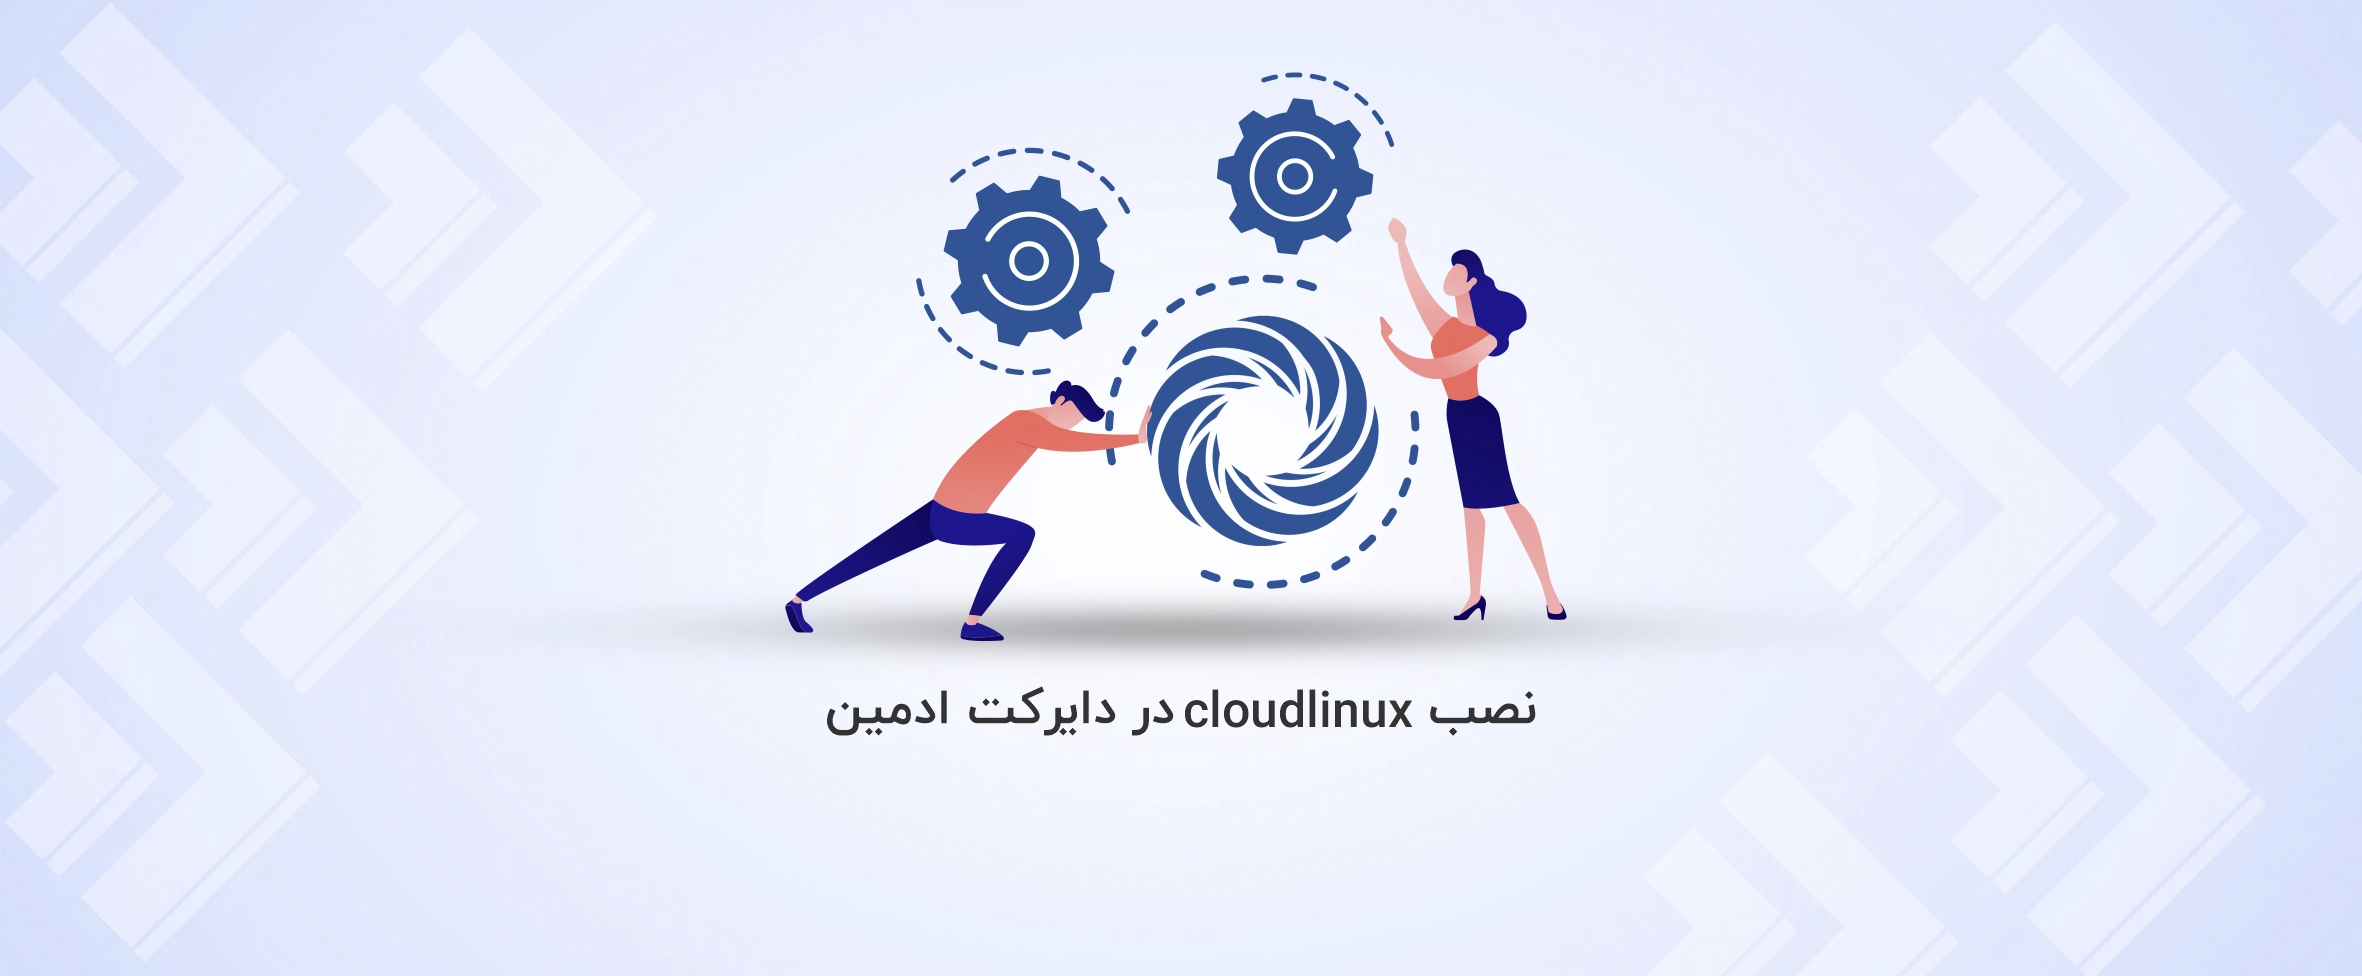 آموزش نصب cloudlinux در دایرکت ادمین - آذرسیس